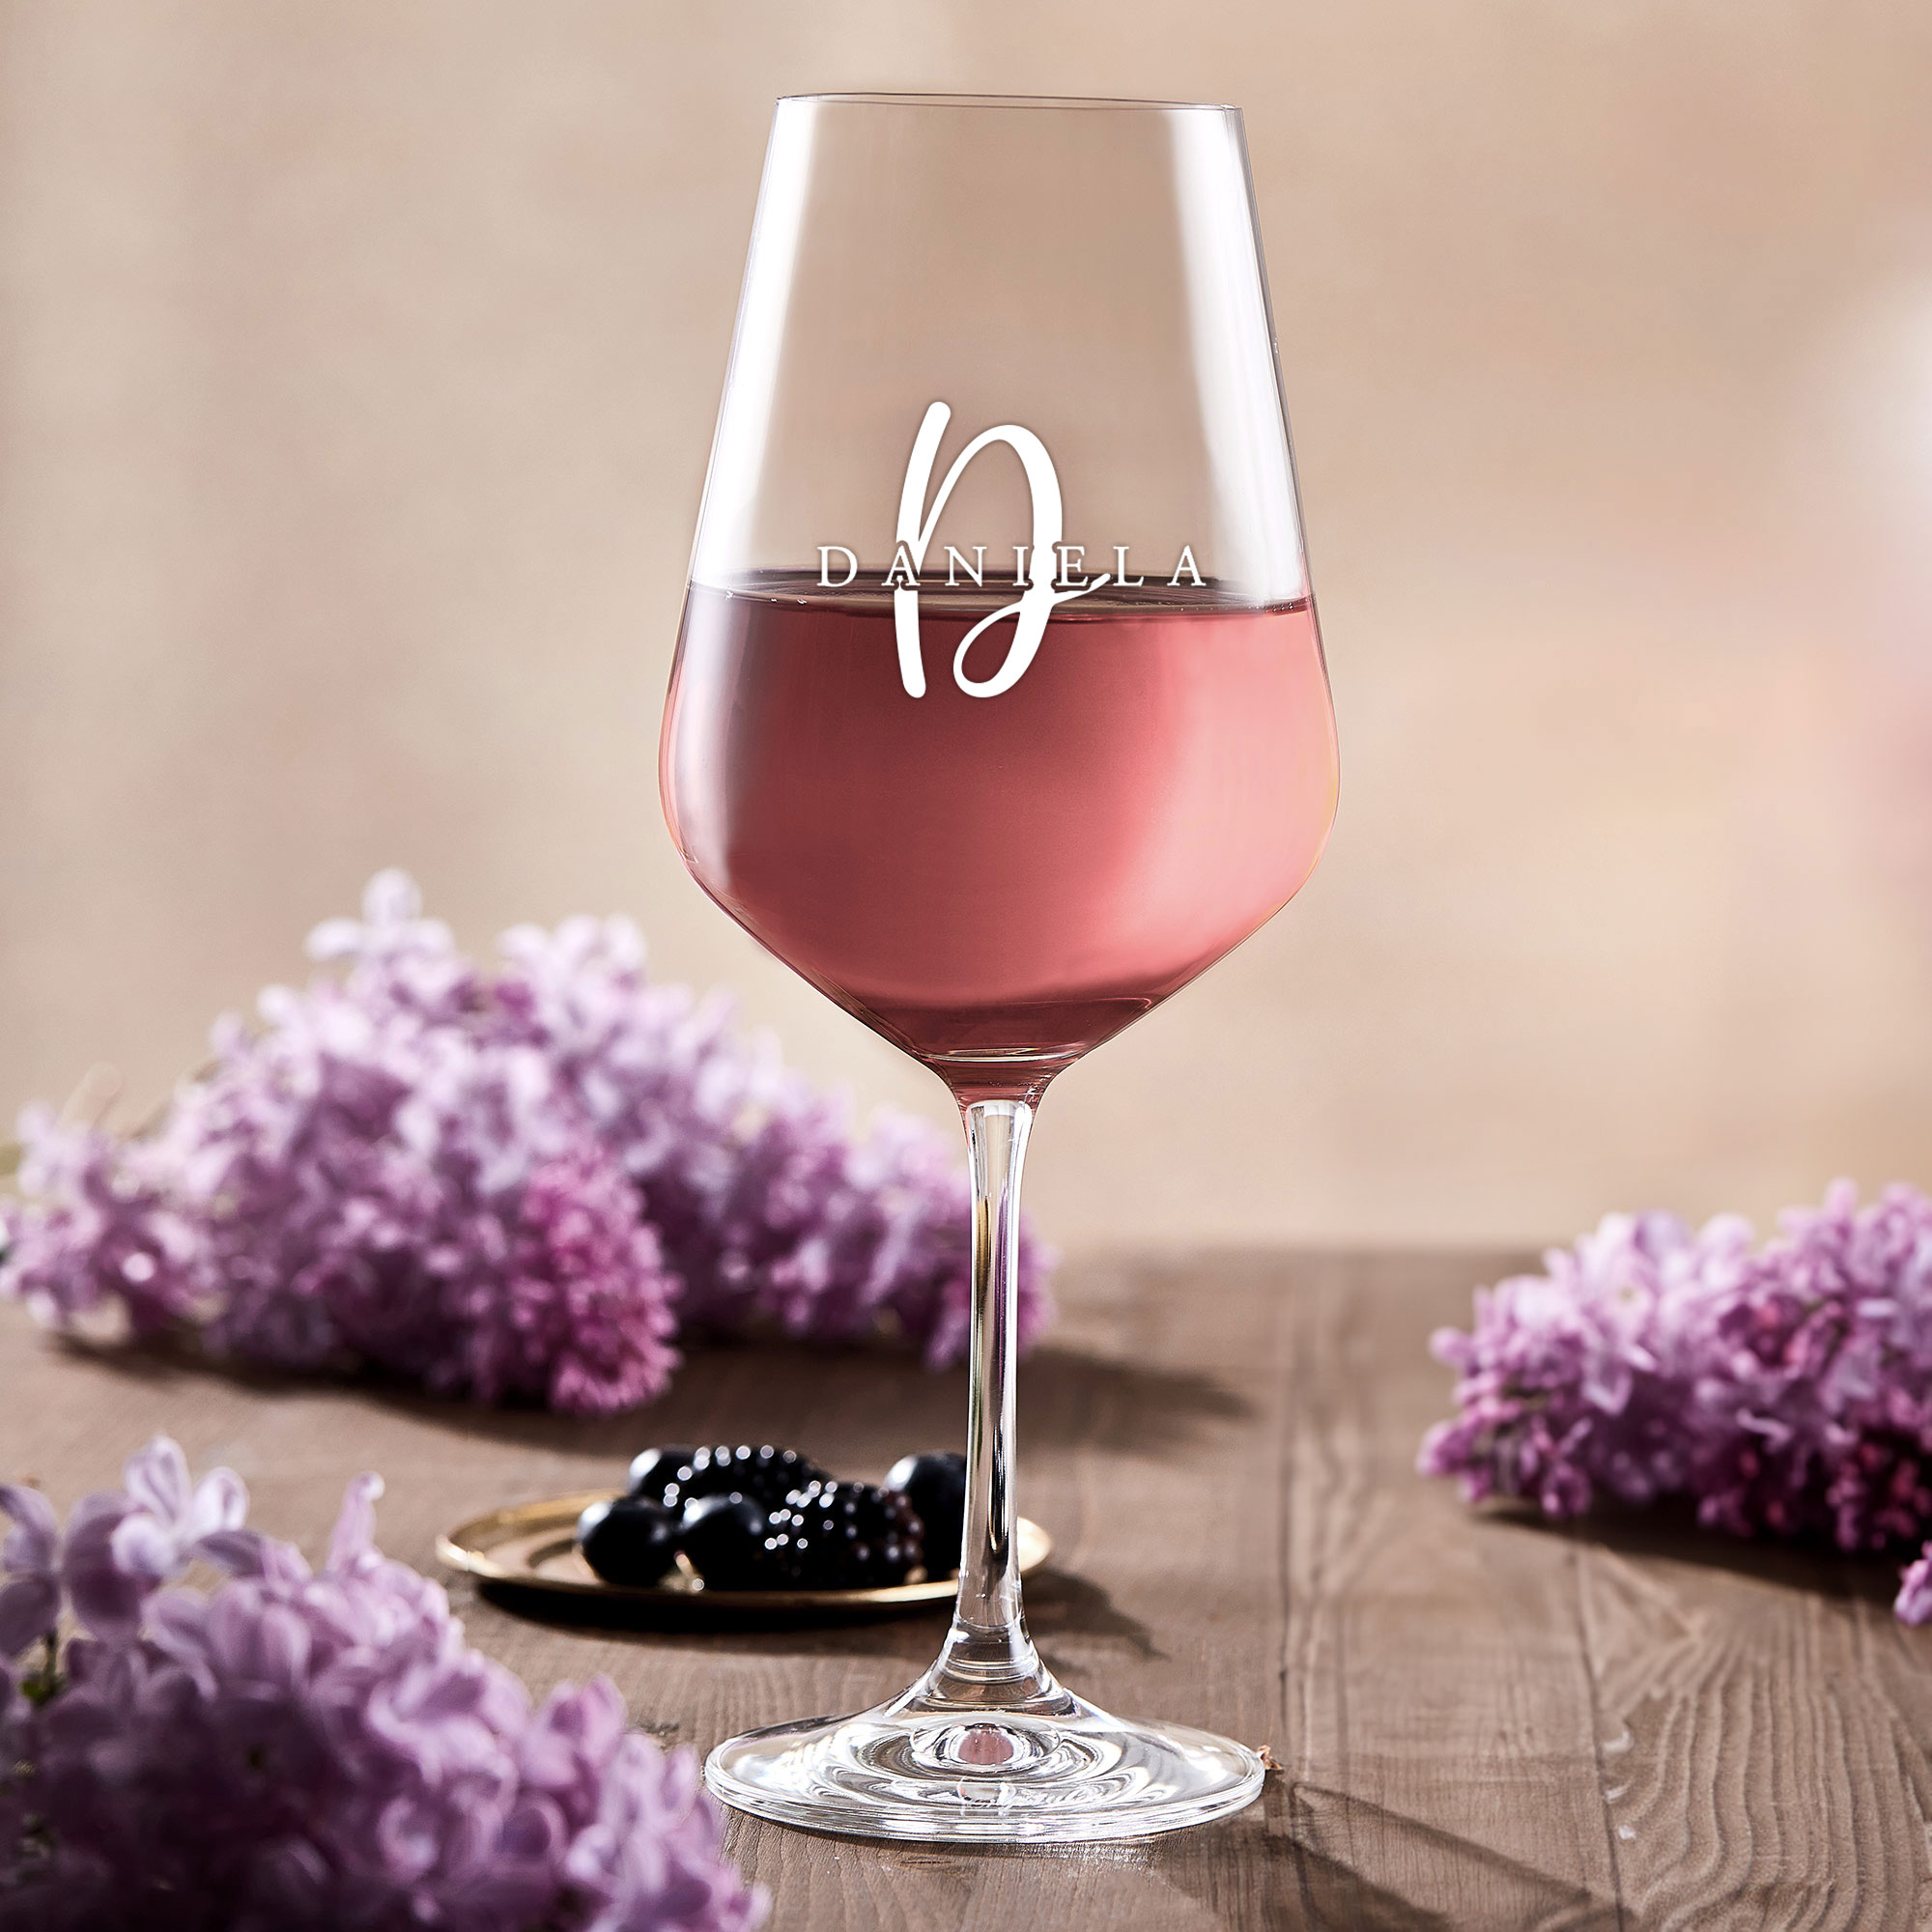 Weinglas mit Gravur - Initial und Name